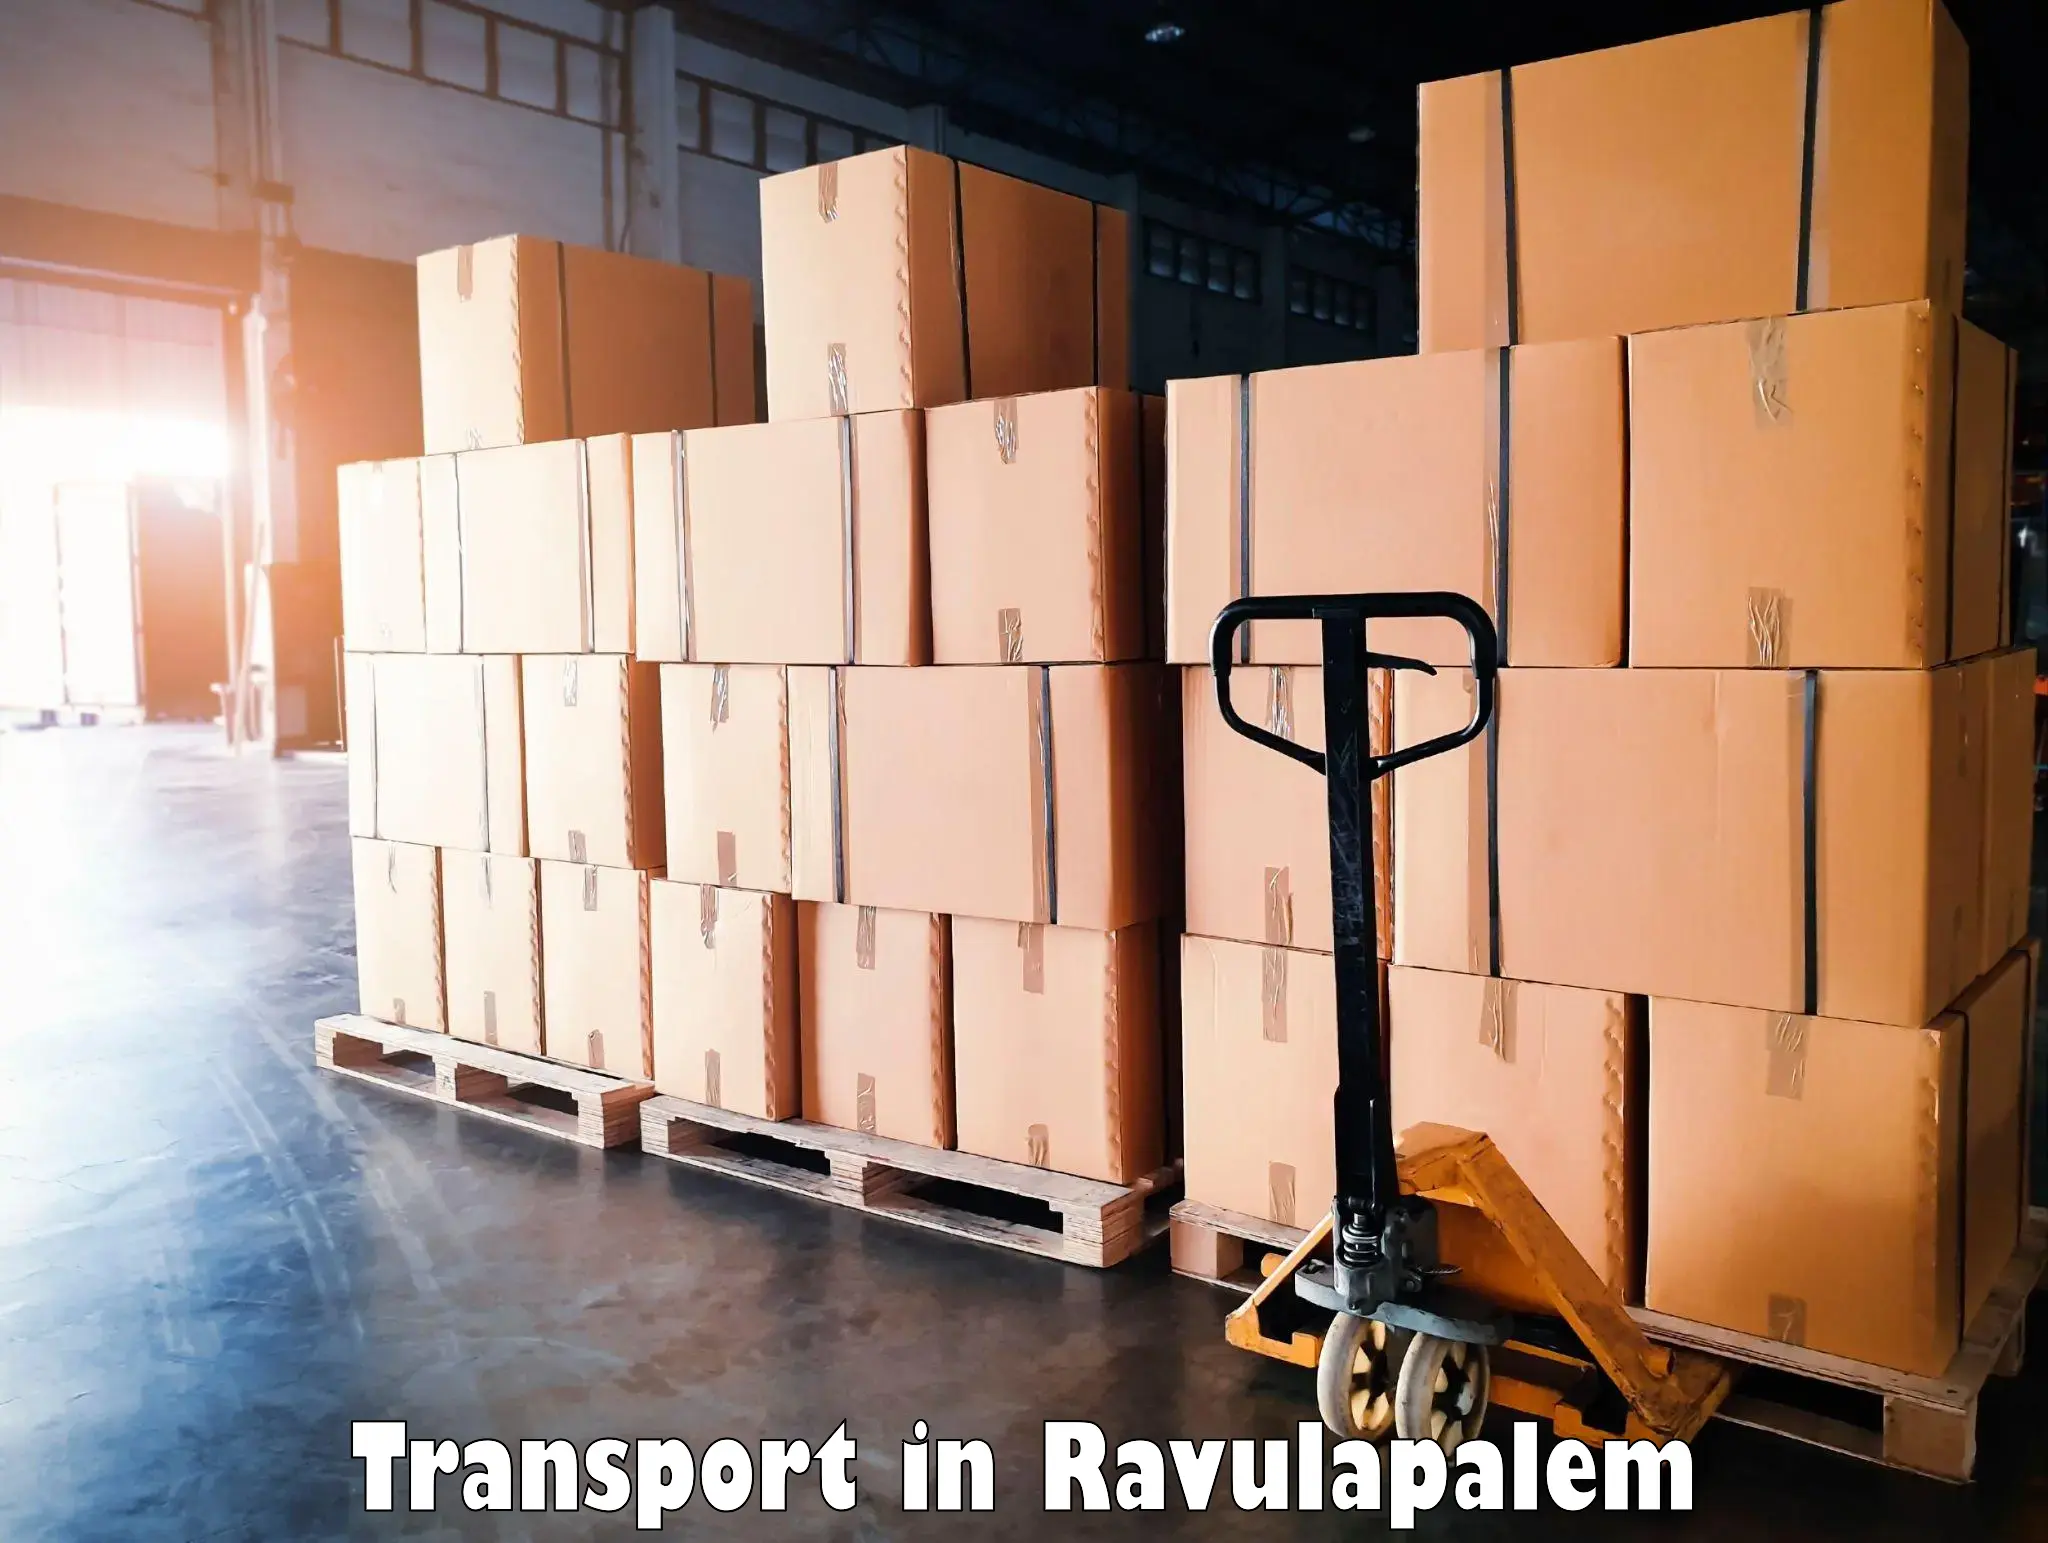 Nearby transport service in Ravulapalem